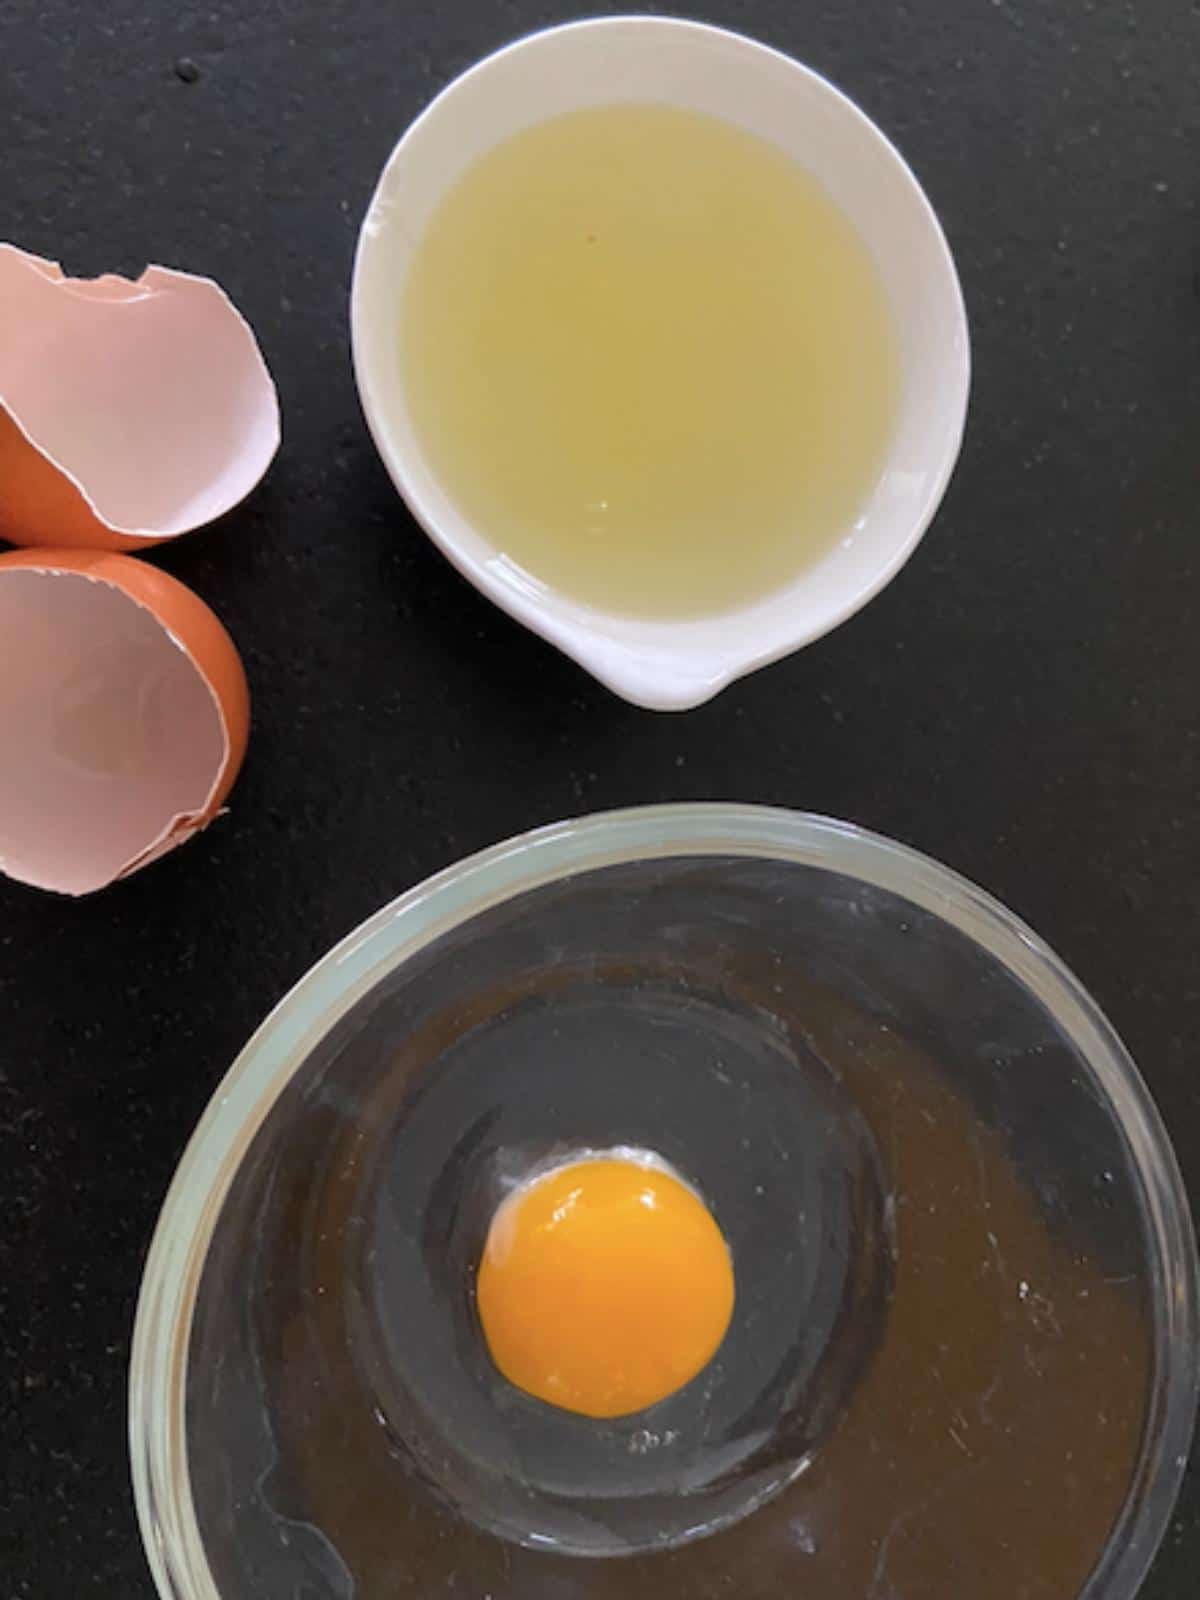 egg yolk separated from egg white